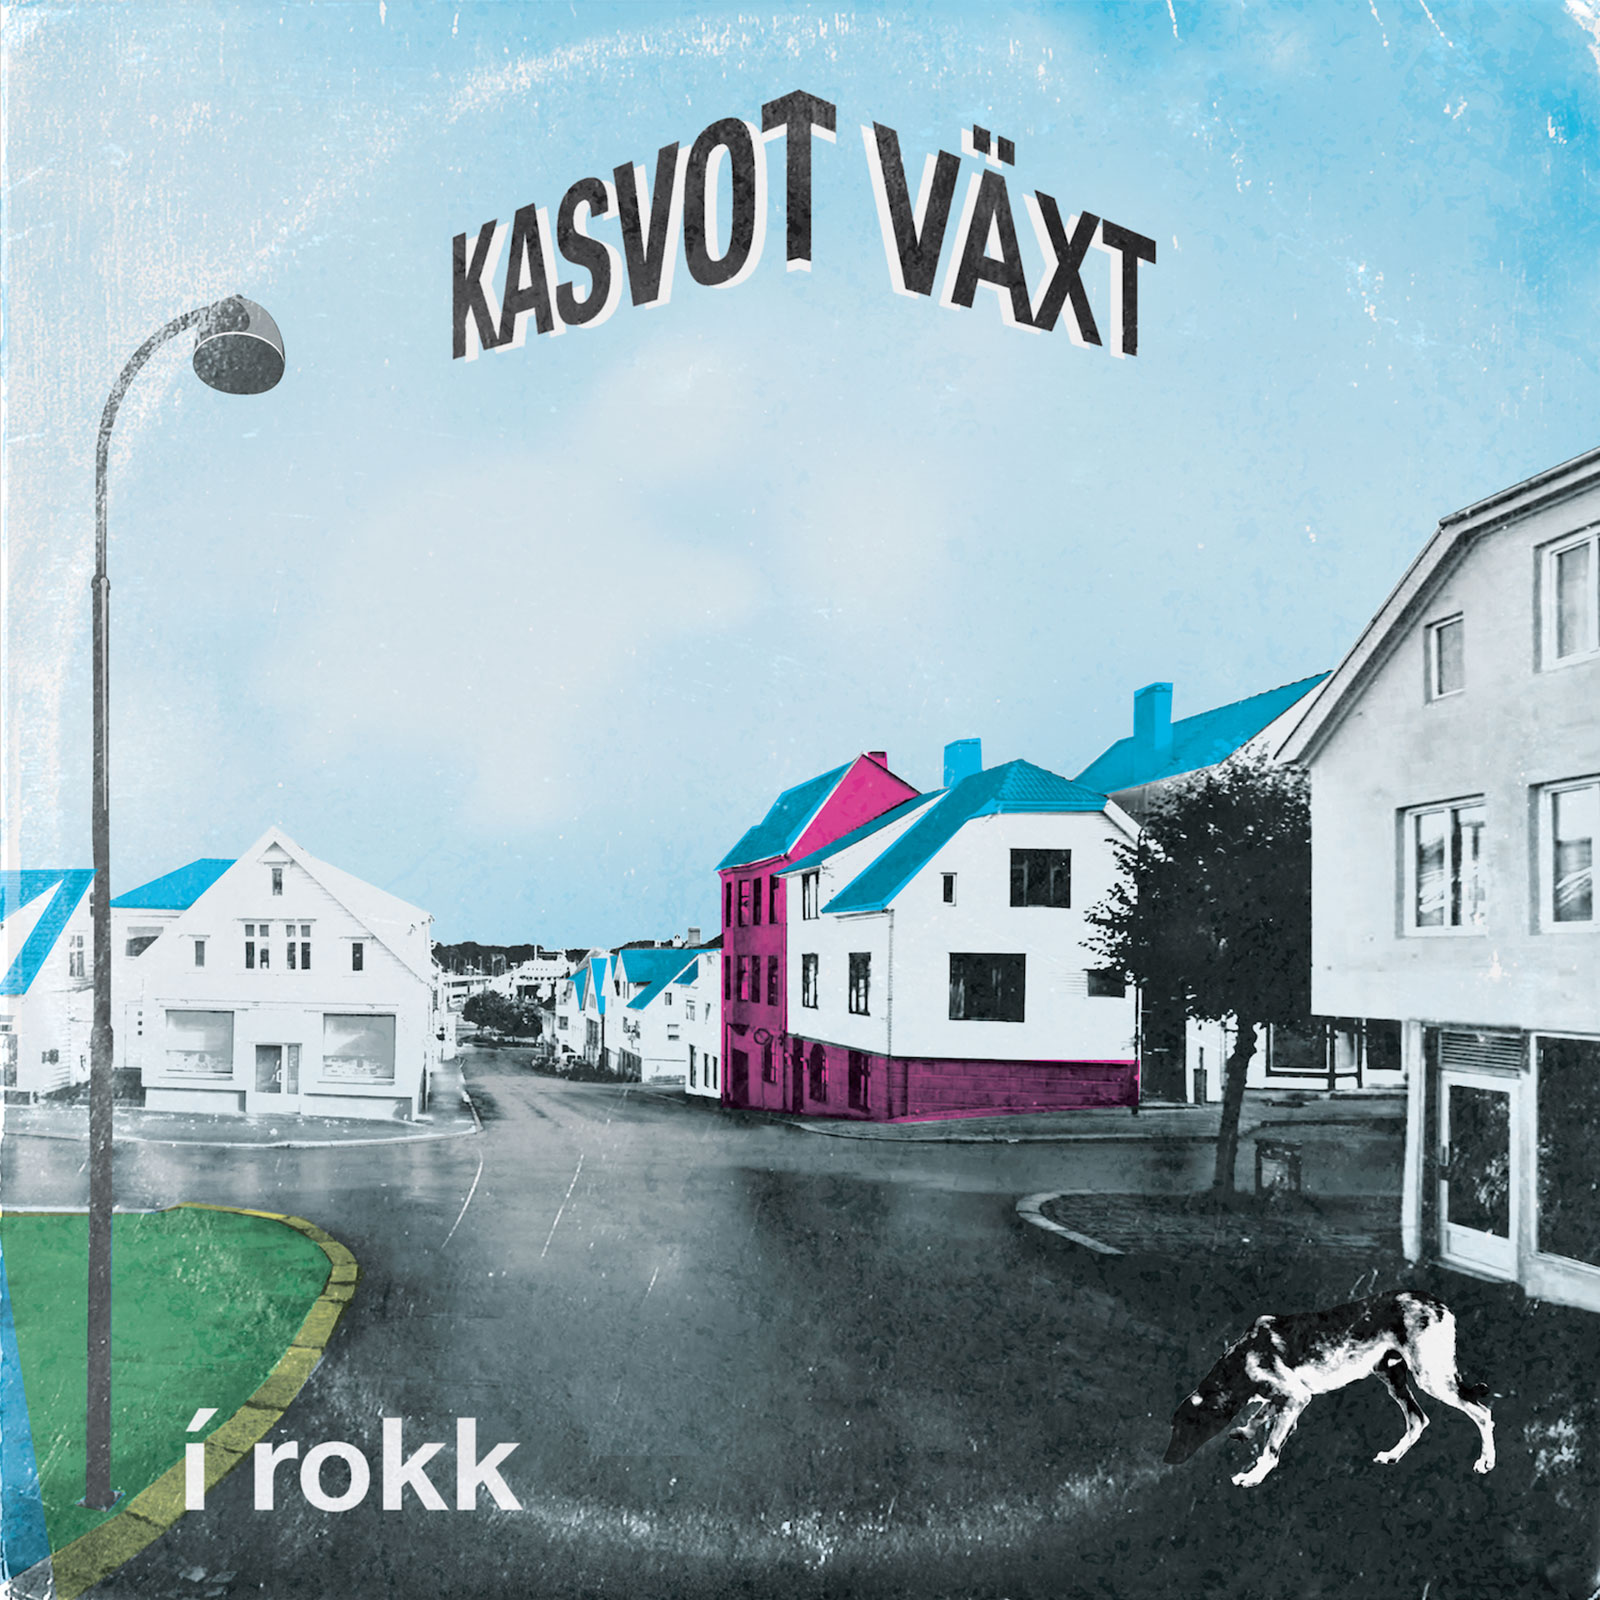 Phish - Kasvot Vaxt: i rokk (2018) [FLAC 24bit/44,1kHz]